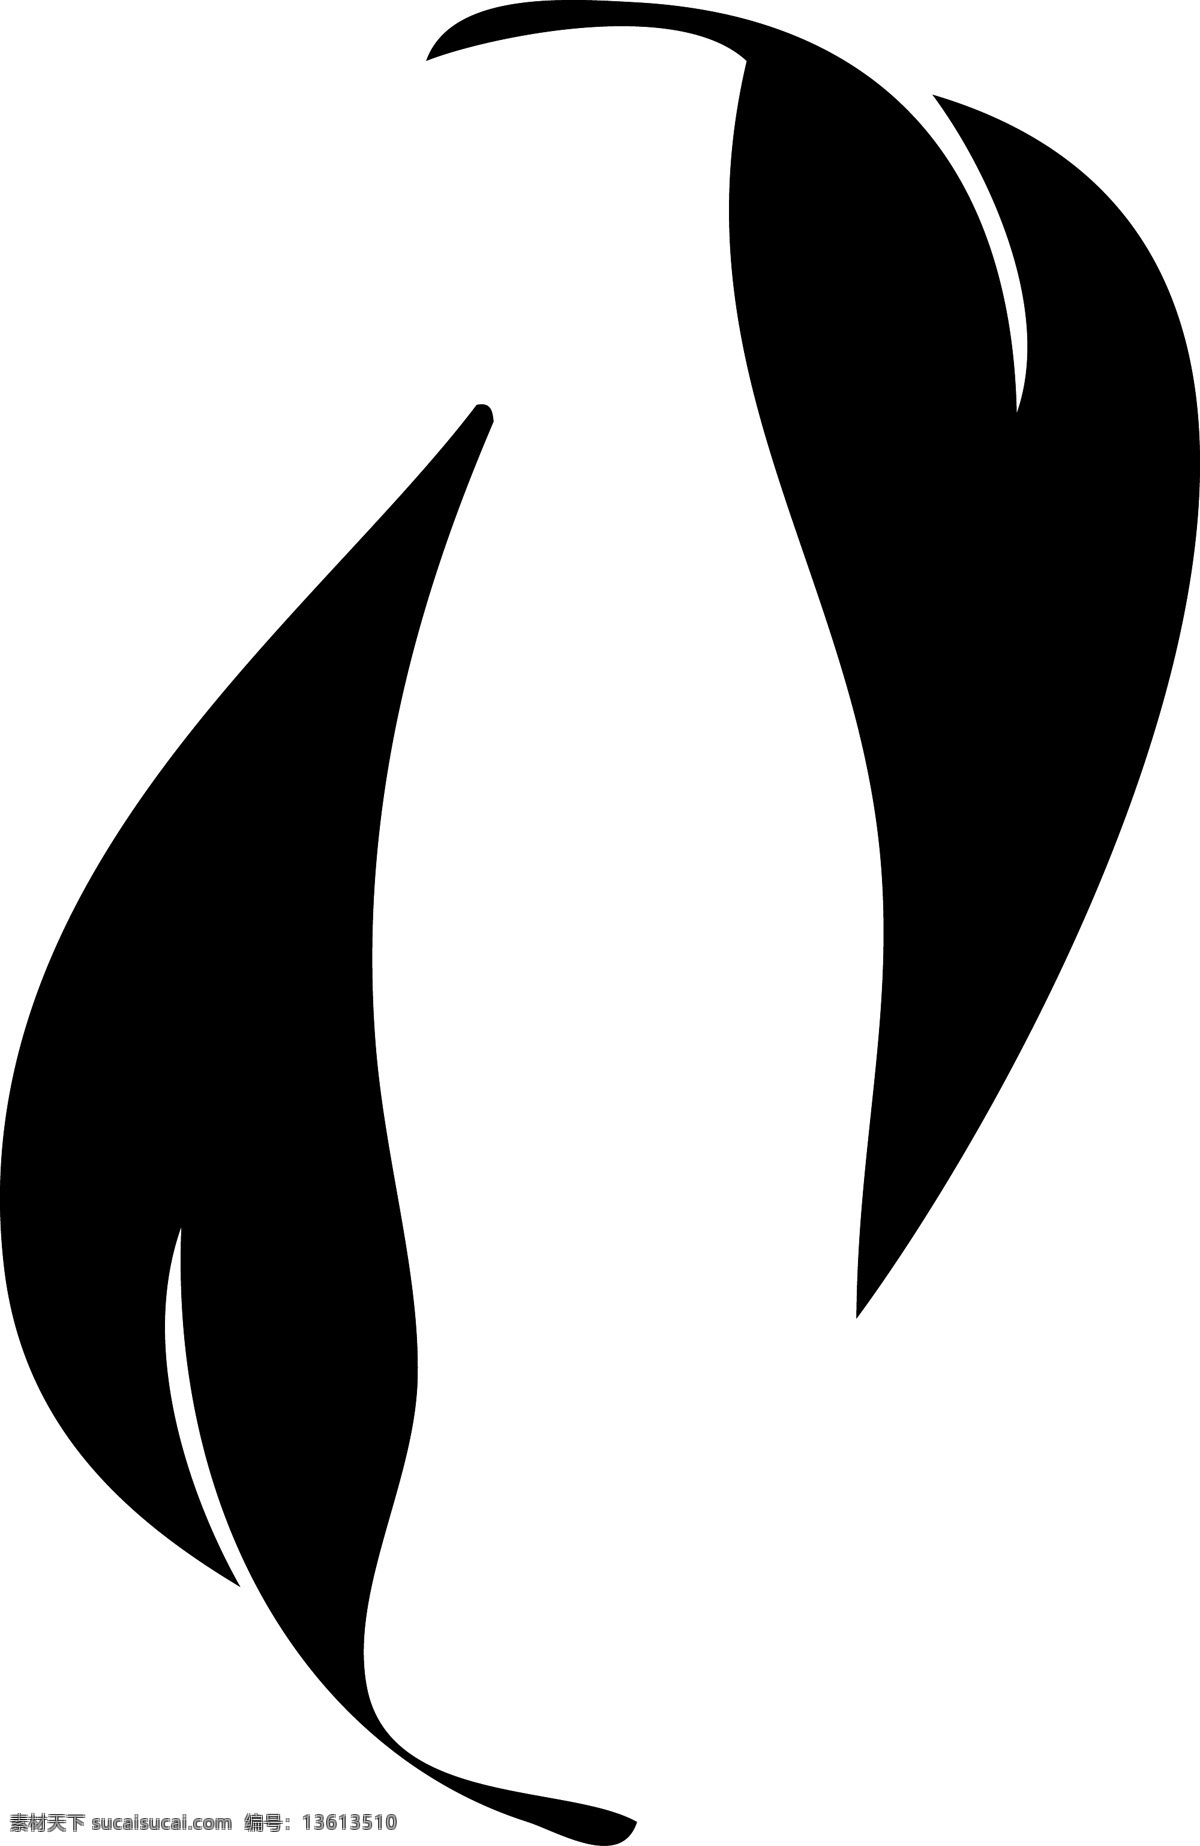 可口可乐 免费 标志 标识 psd源文件 logo设计